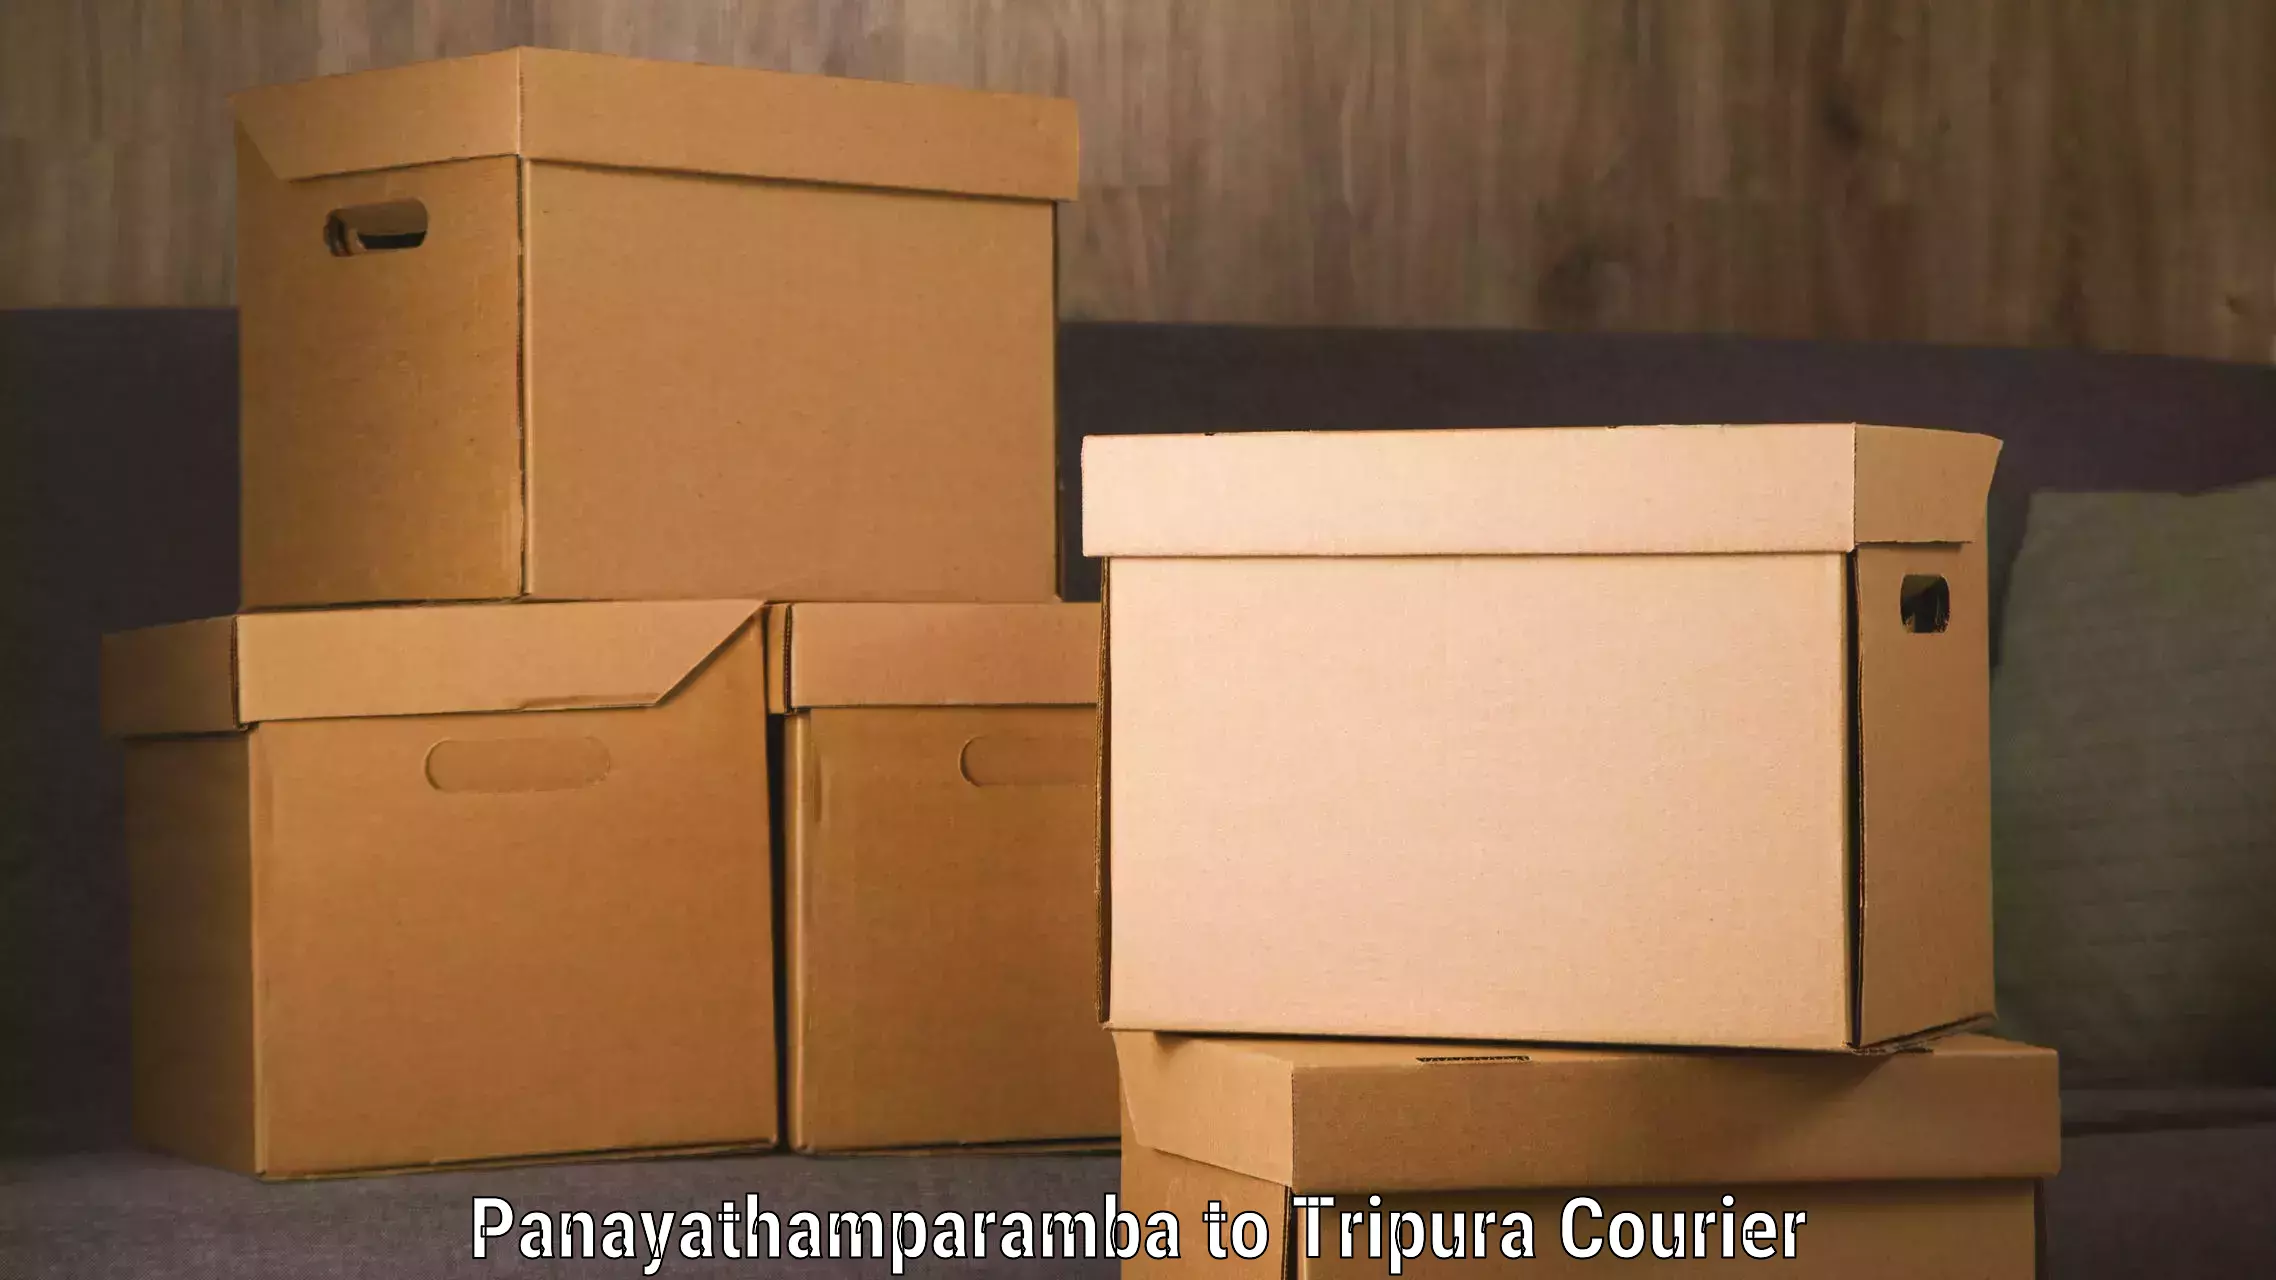 Speedy delivery service Panayathamparamba to Ambassa